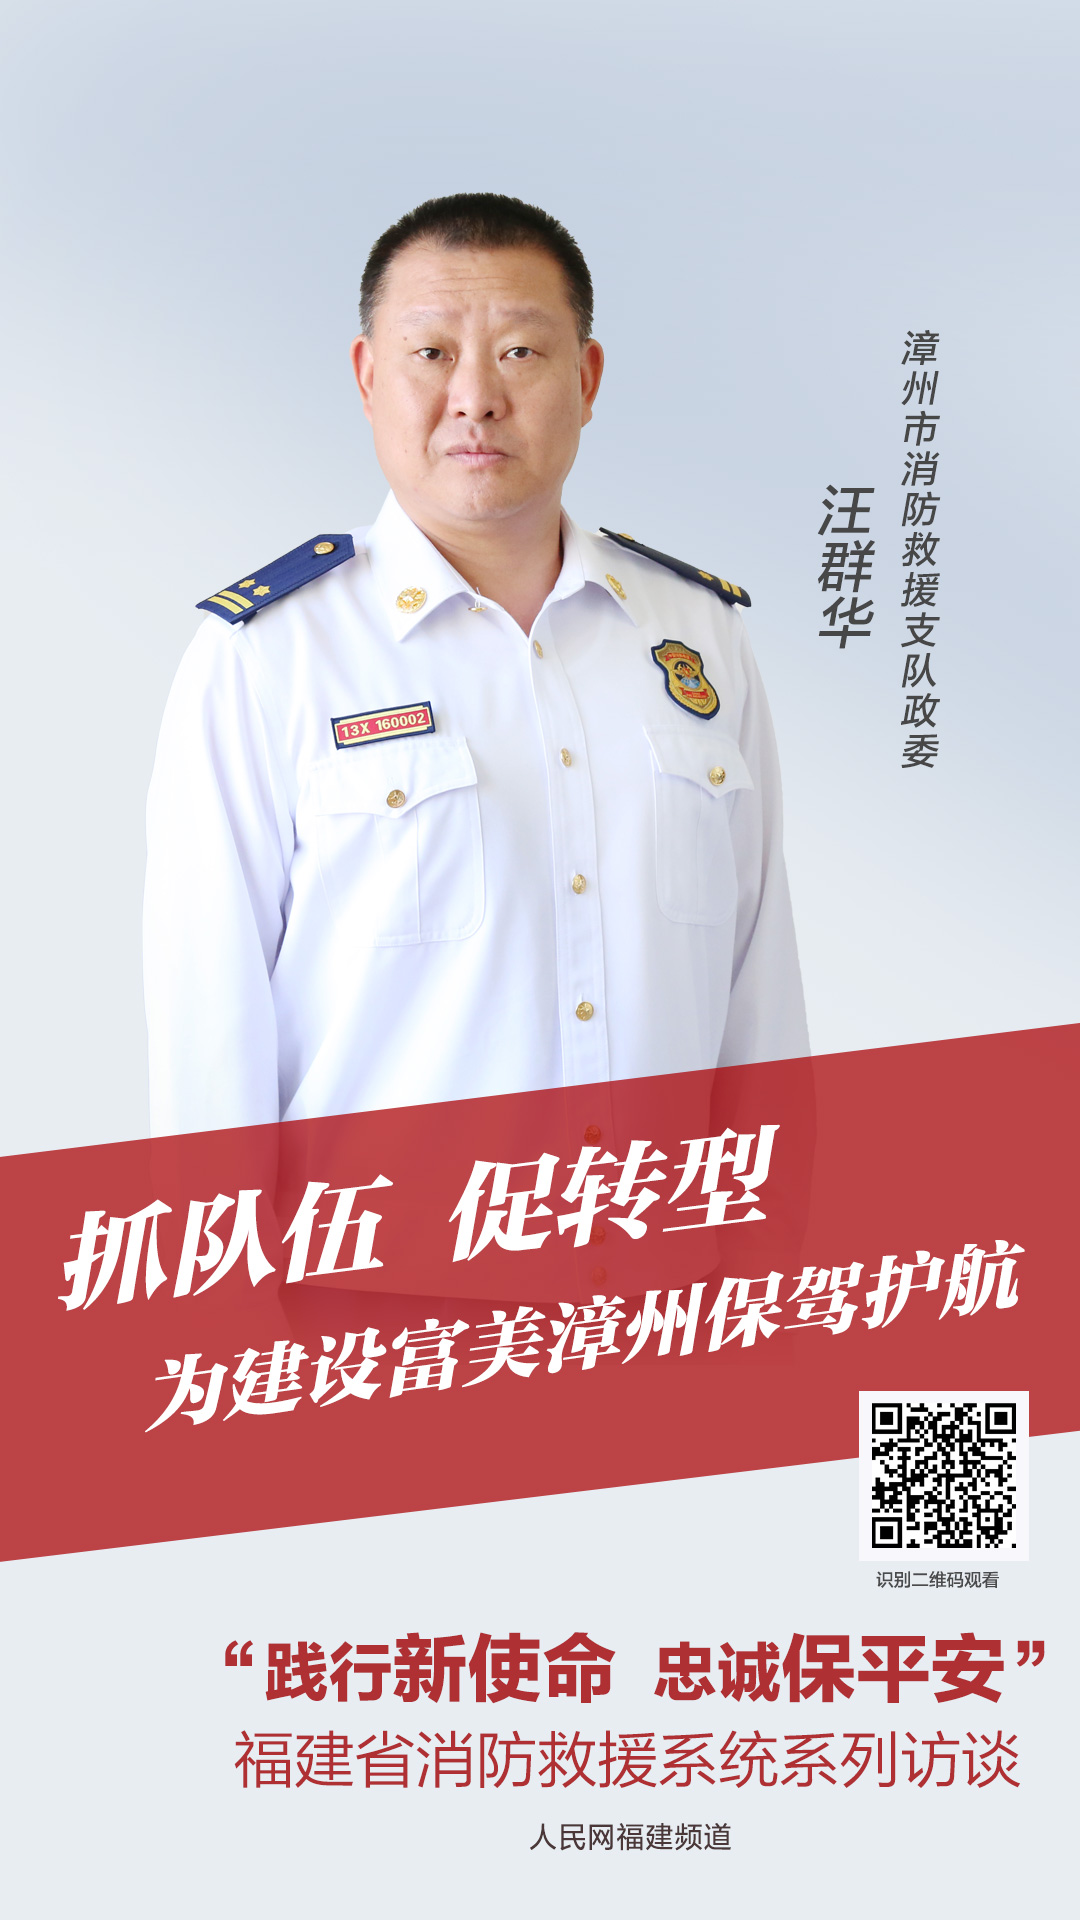 漳州市消防救援支隊黨委書記、政治委員 汪群華